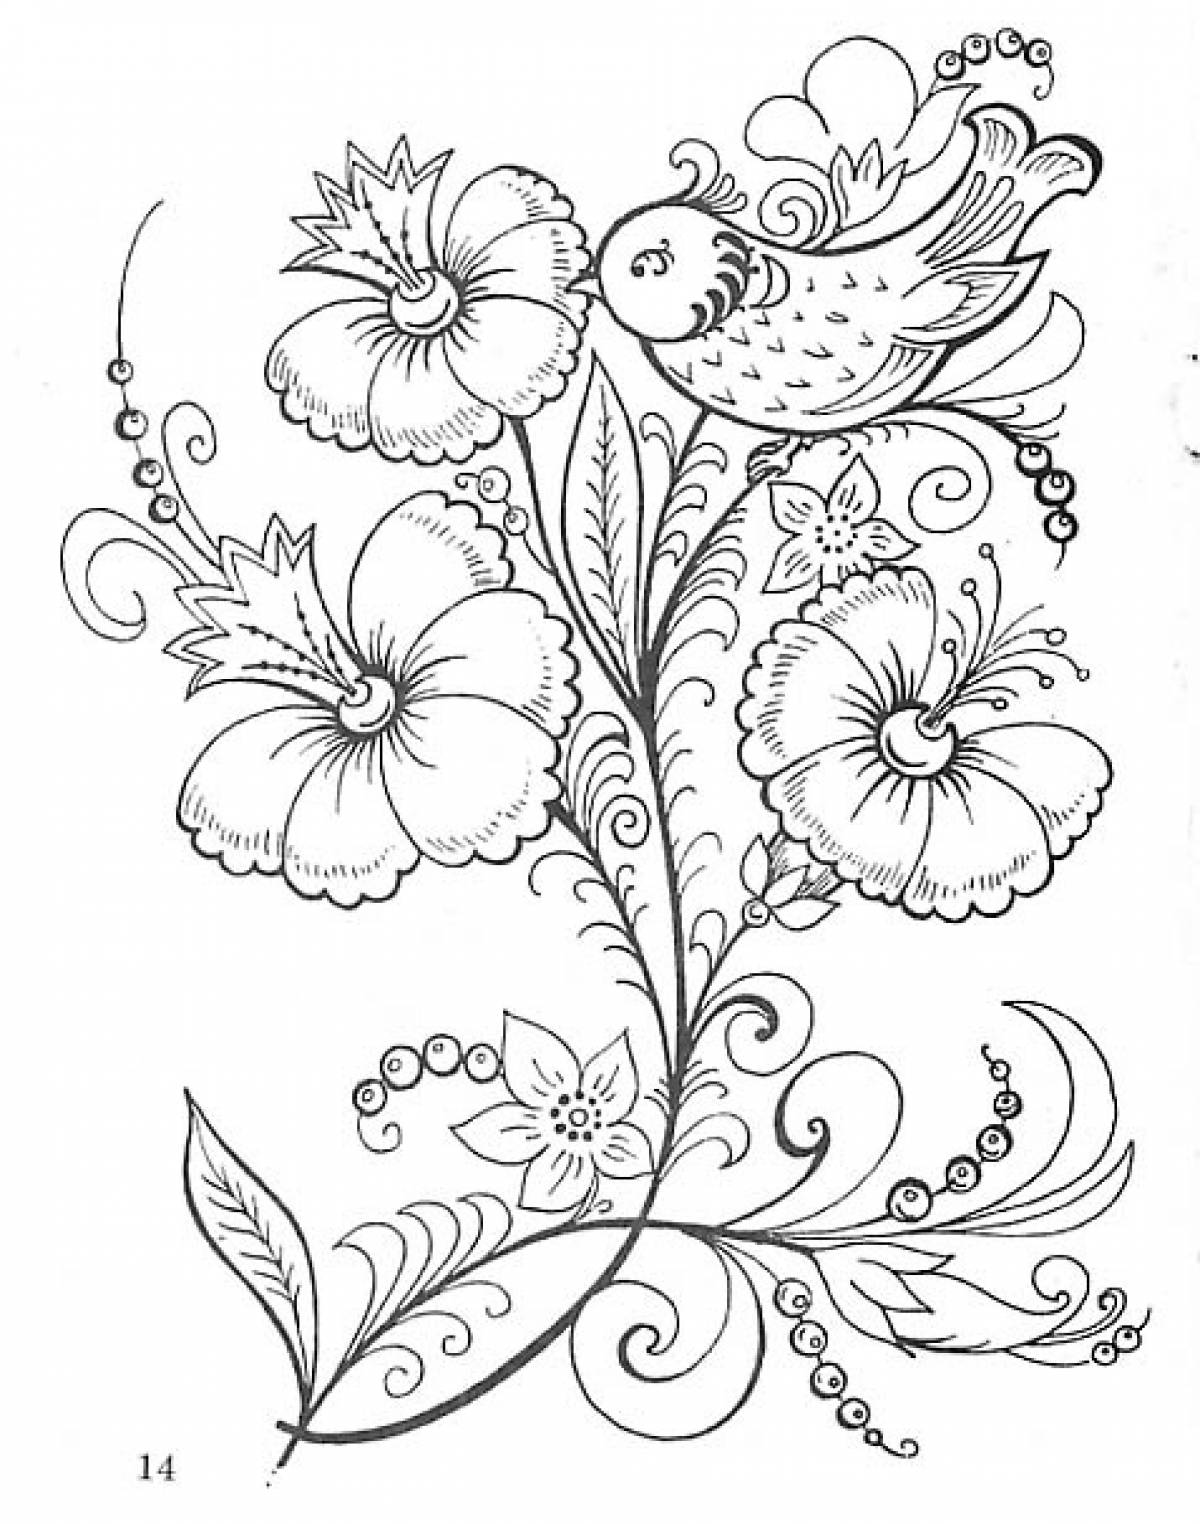 Floral motifs